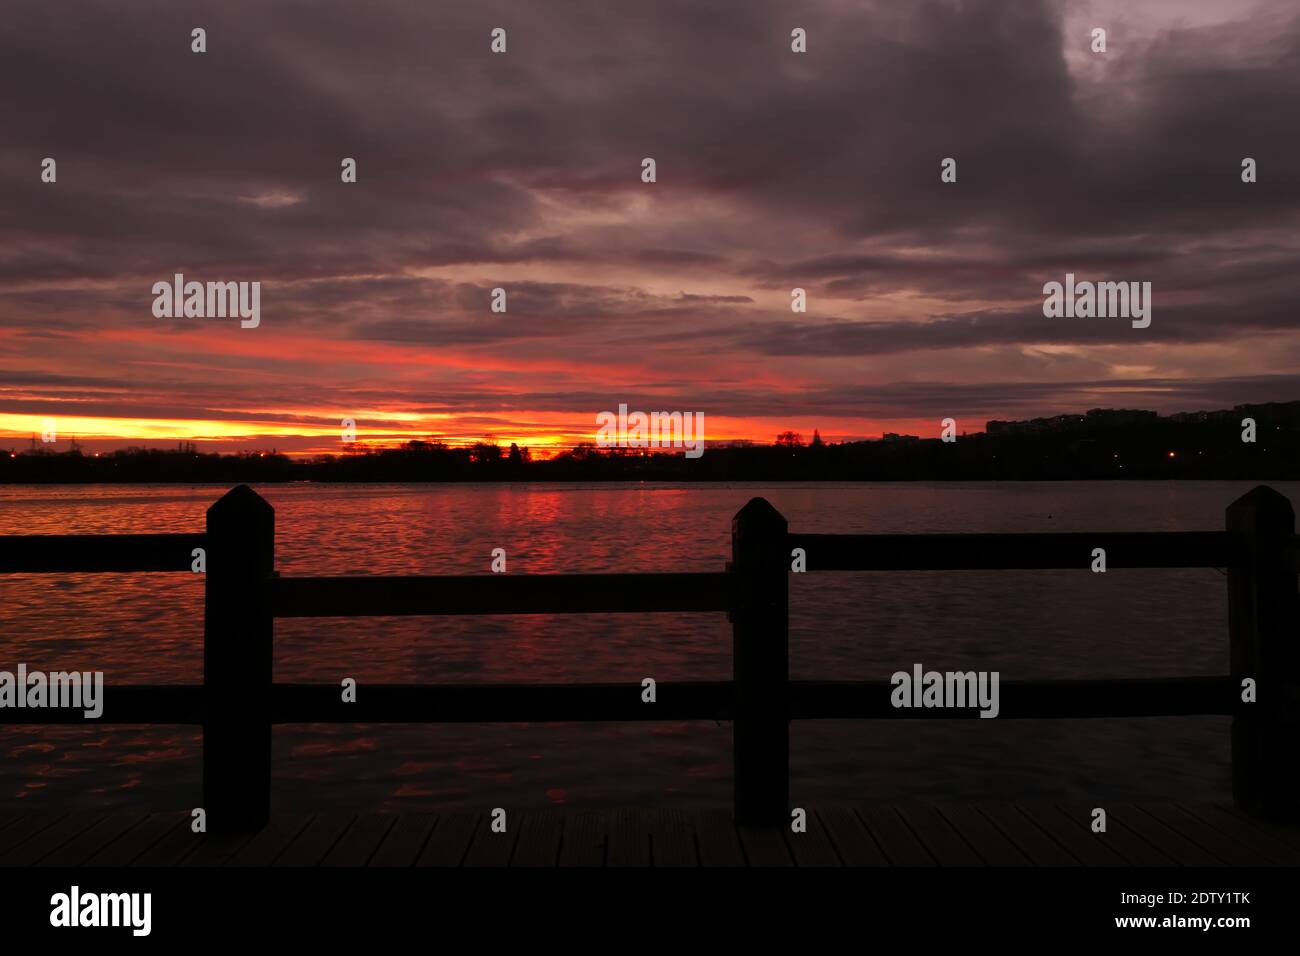 Incredibile alba o tramonto su un lago. Cielo drammatico con nuvole all'orizzonte con acqua e recinzione in legno in primo piano. Foto Stock